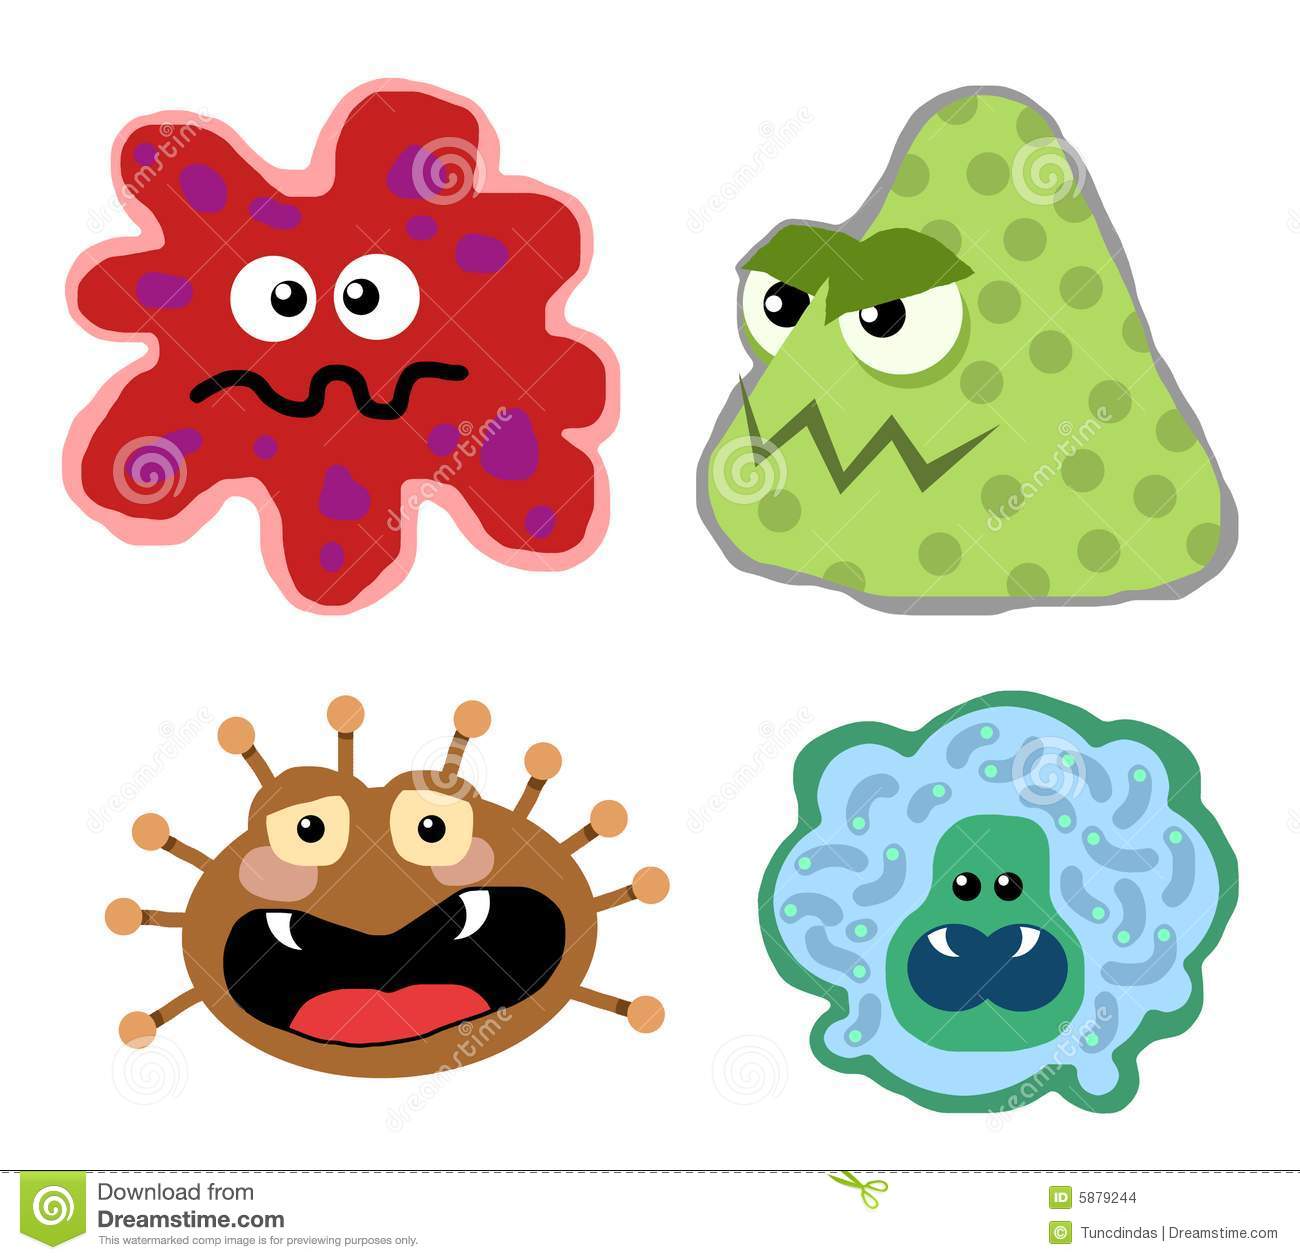 Flu clipart cute. Germs 